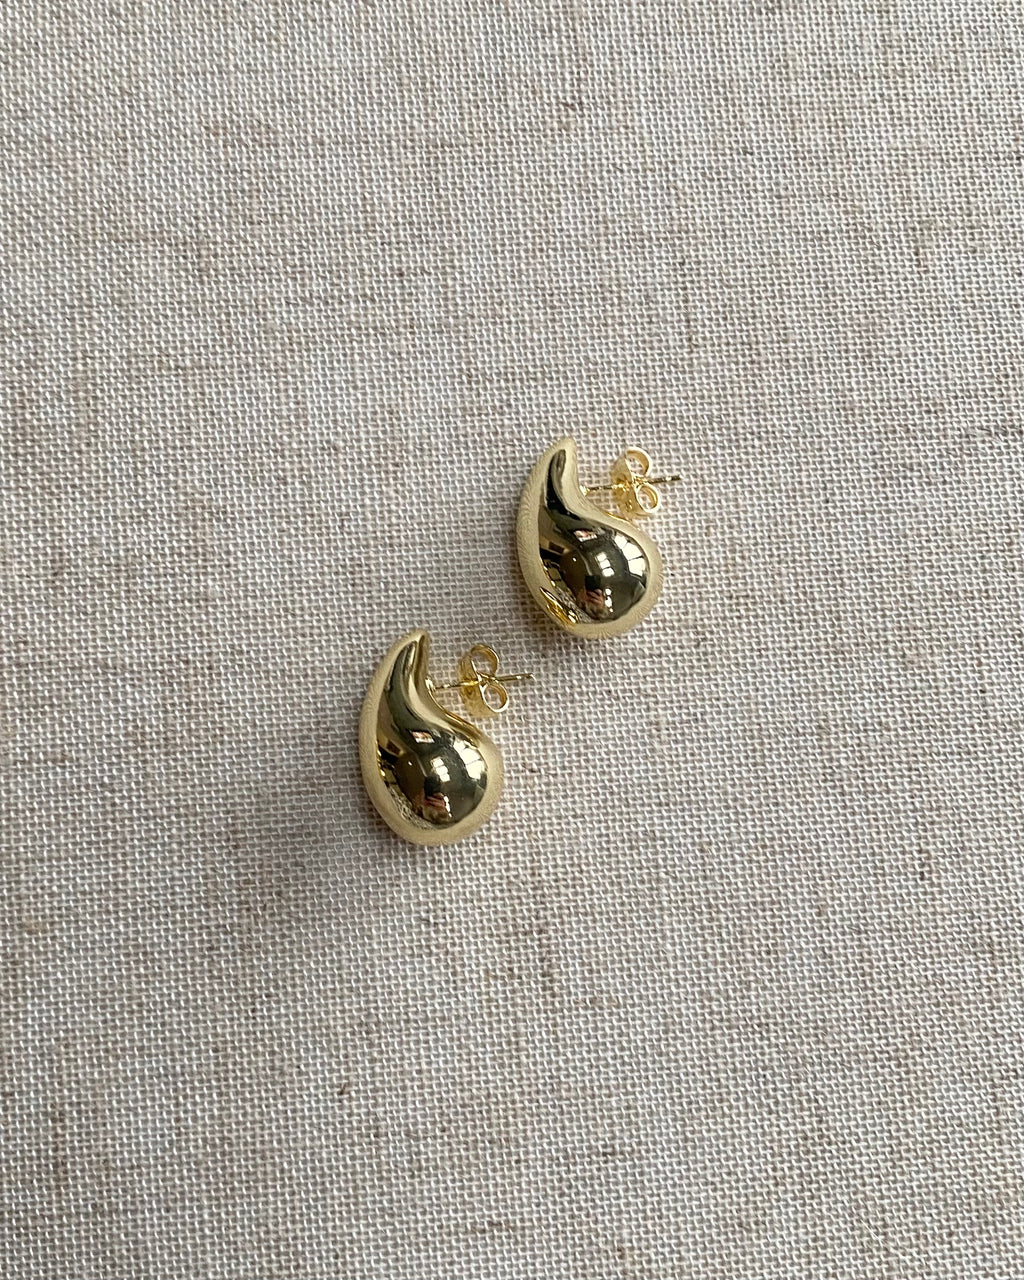 BRONTE | medium gold filled drop stud earrings